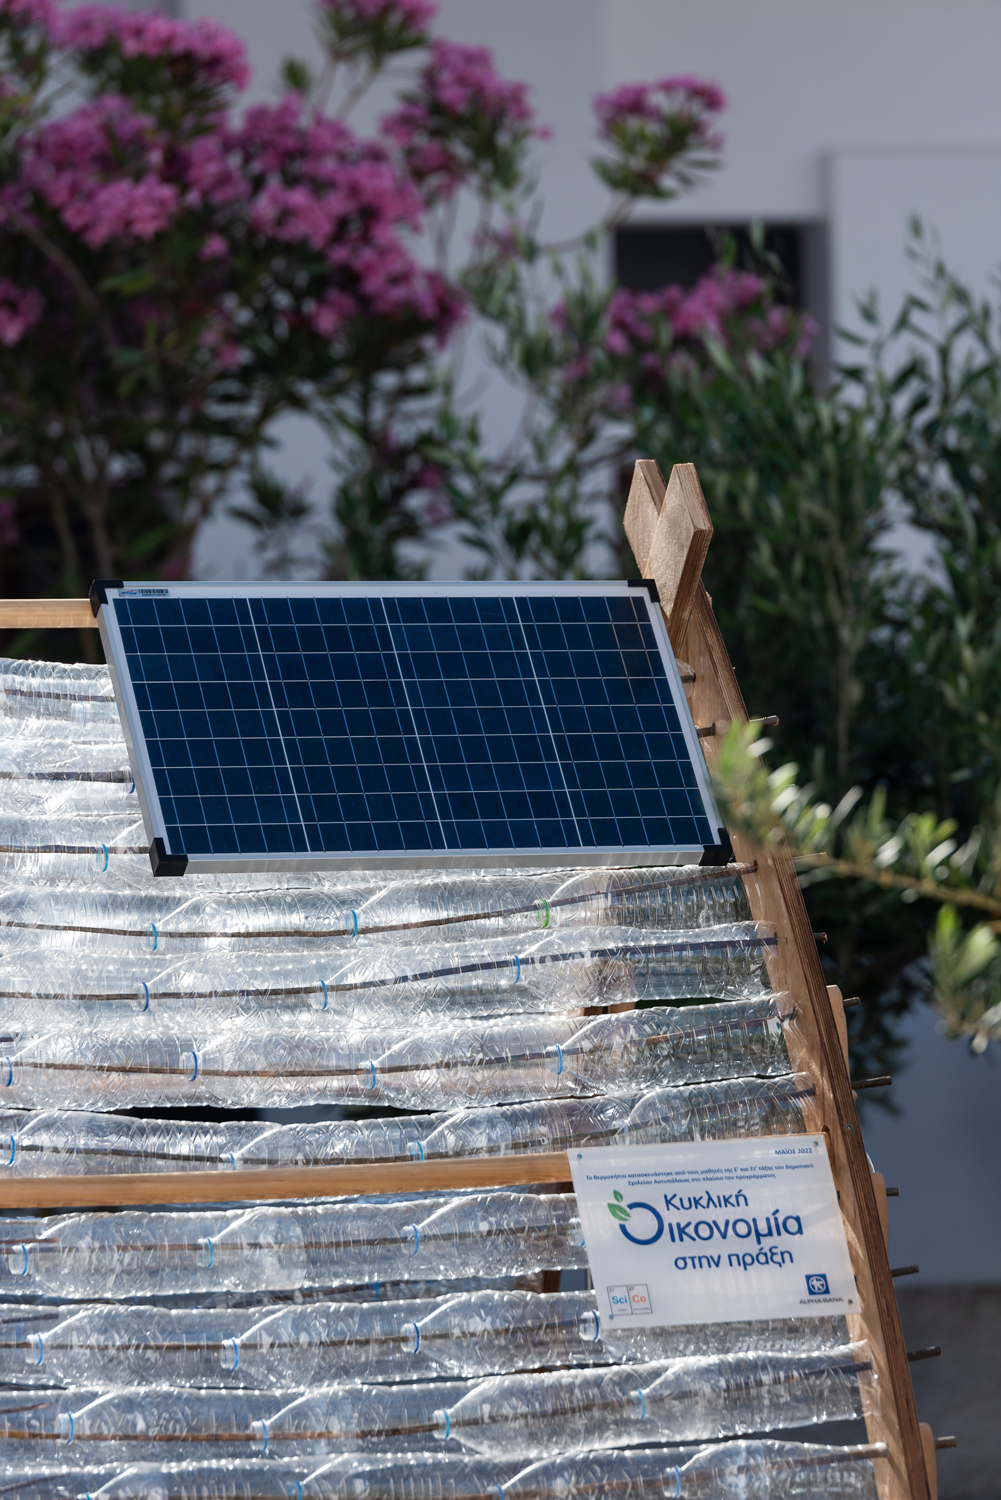 Το «Έξυπνο και Βιώσιμο θερμοκήπιο» είναι ενεργειακά αυτόνομο χάρη στα ηλιακά πάνελ που τοποθέτησαν οι μαθητές. Με την ενέργεια που παράγεται λειτουργούν οι αισθητήρες ενώ ακόμη και η άρδευση των φυτών γίνεται με το νερό από τα κλιματιστικά μηχανήματα του σχολείου! 